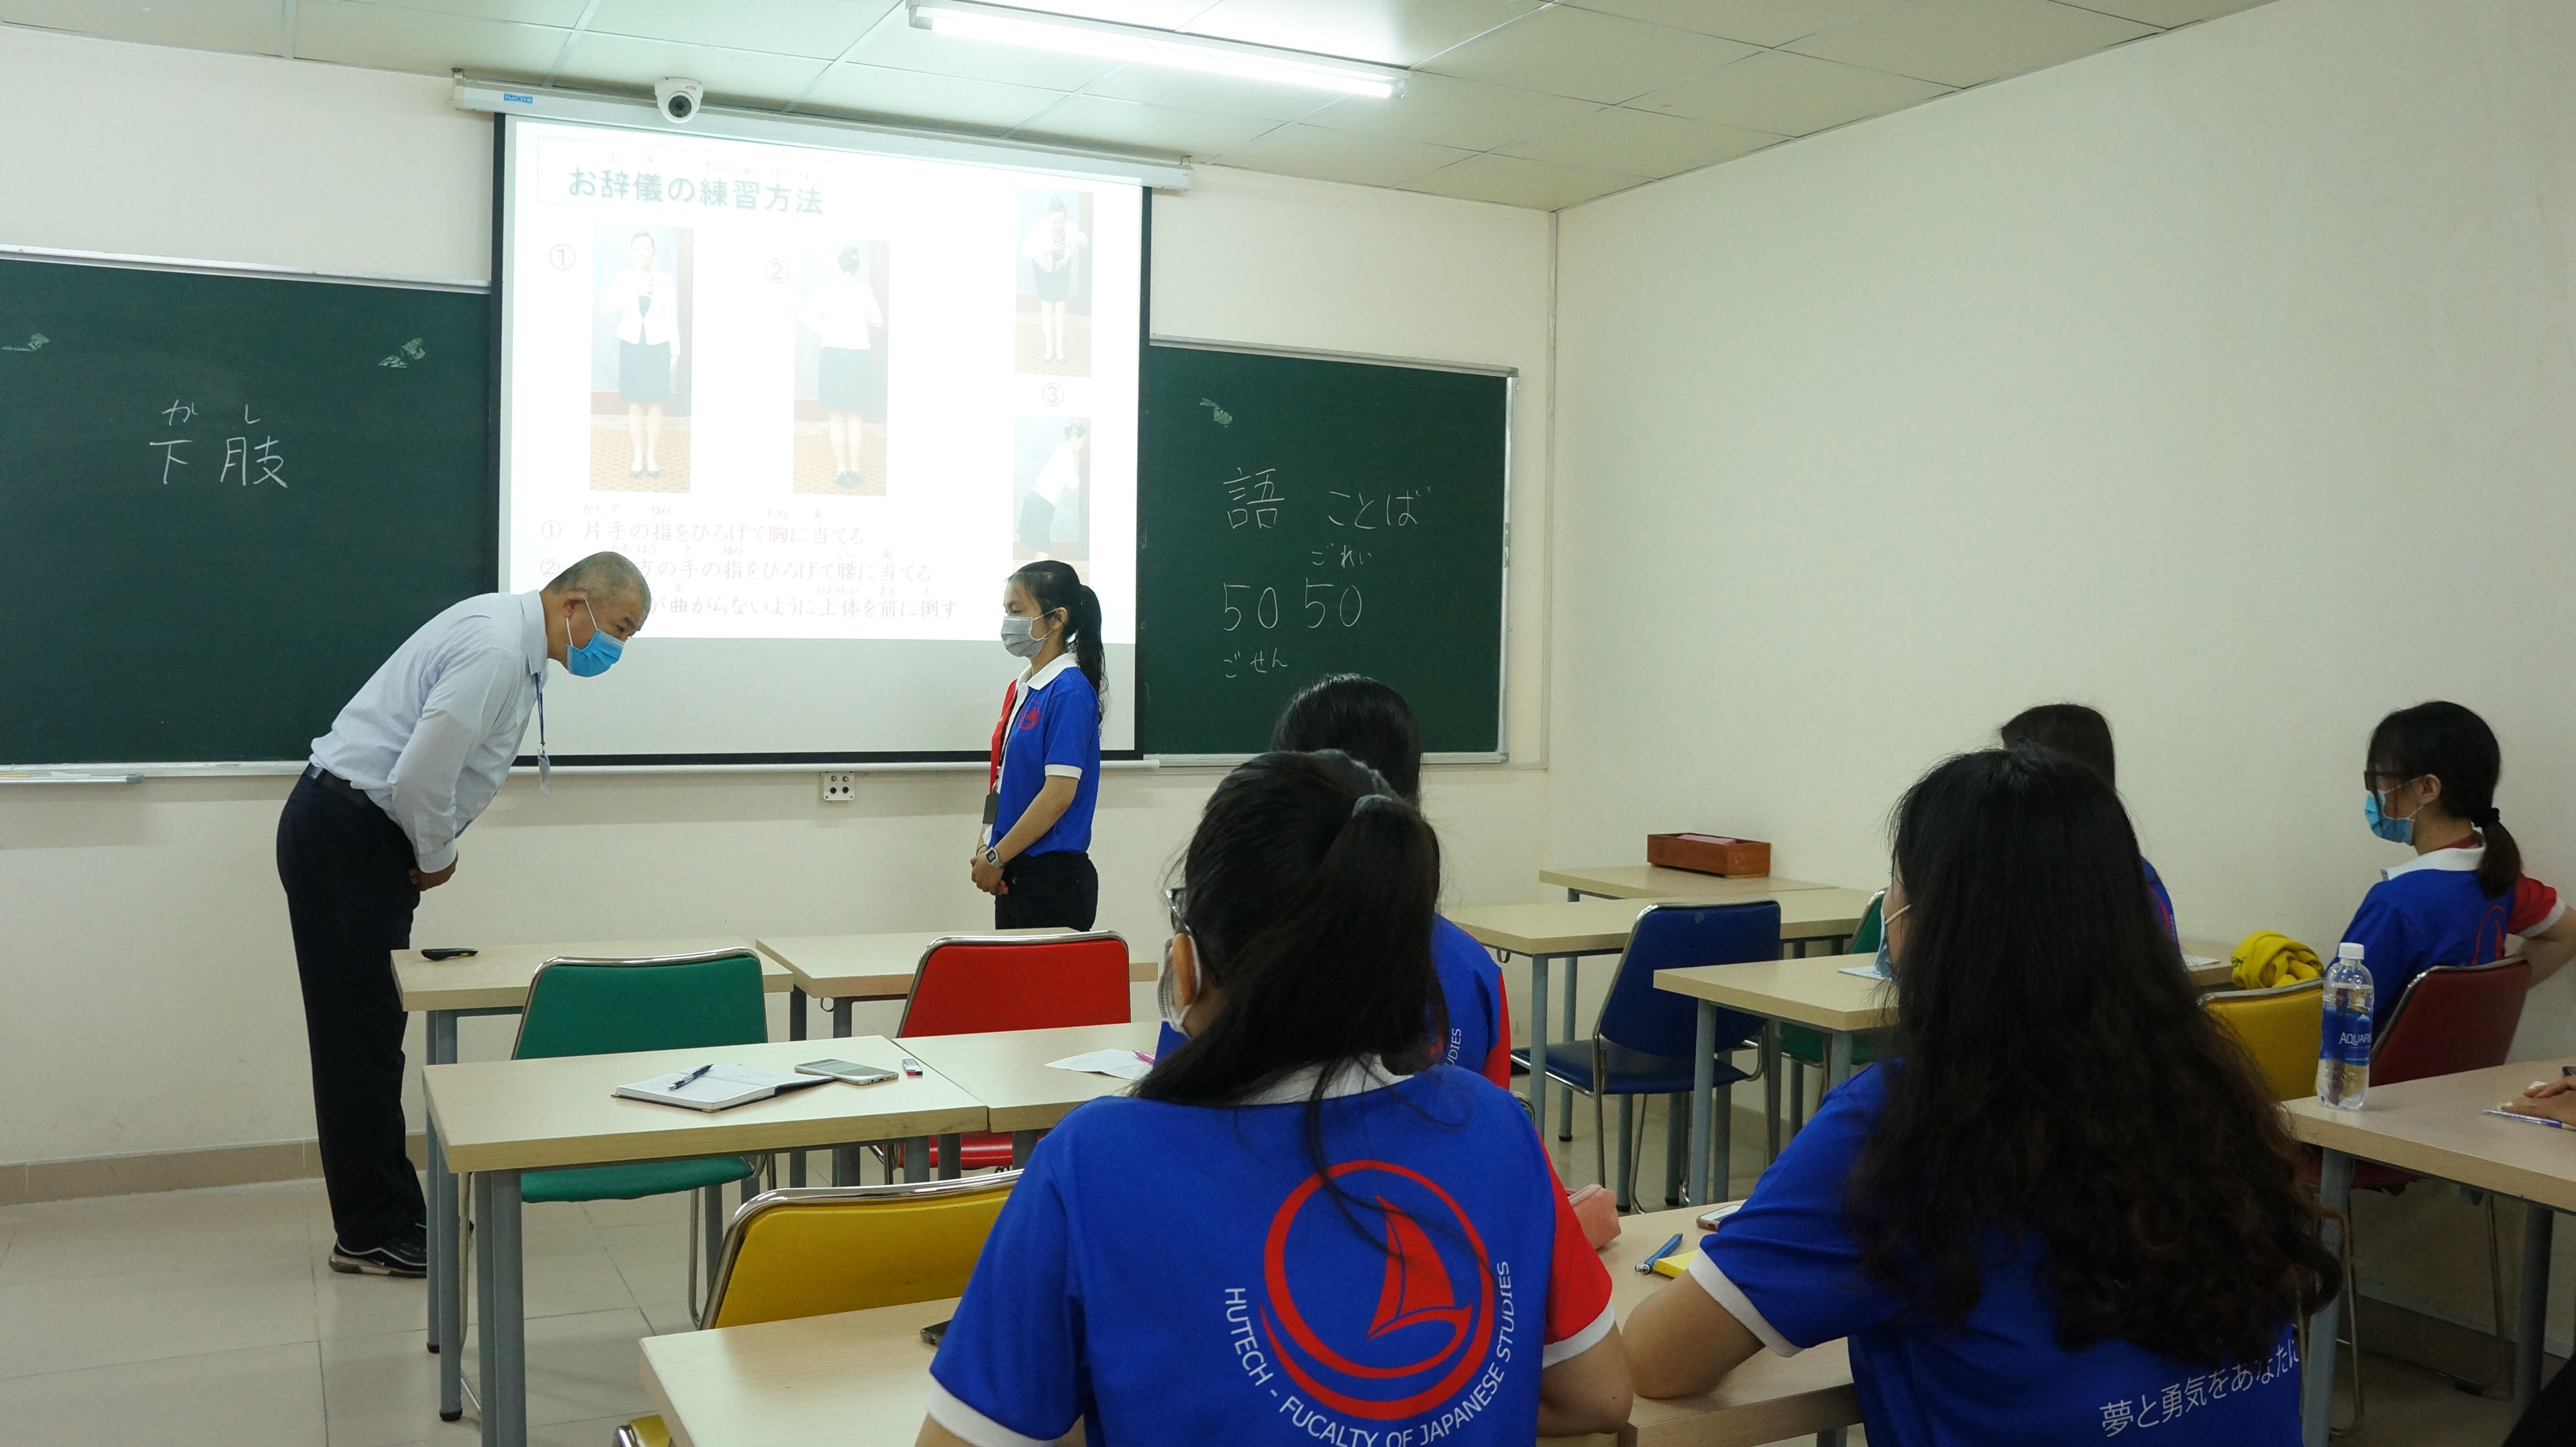 Hội thảo “Văn hóa doanh nghiệp Nhật Bản” dành cho sinh viên khoa Nhật Bản học - HUTECH 23